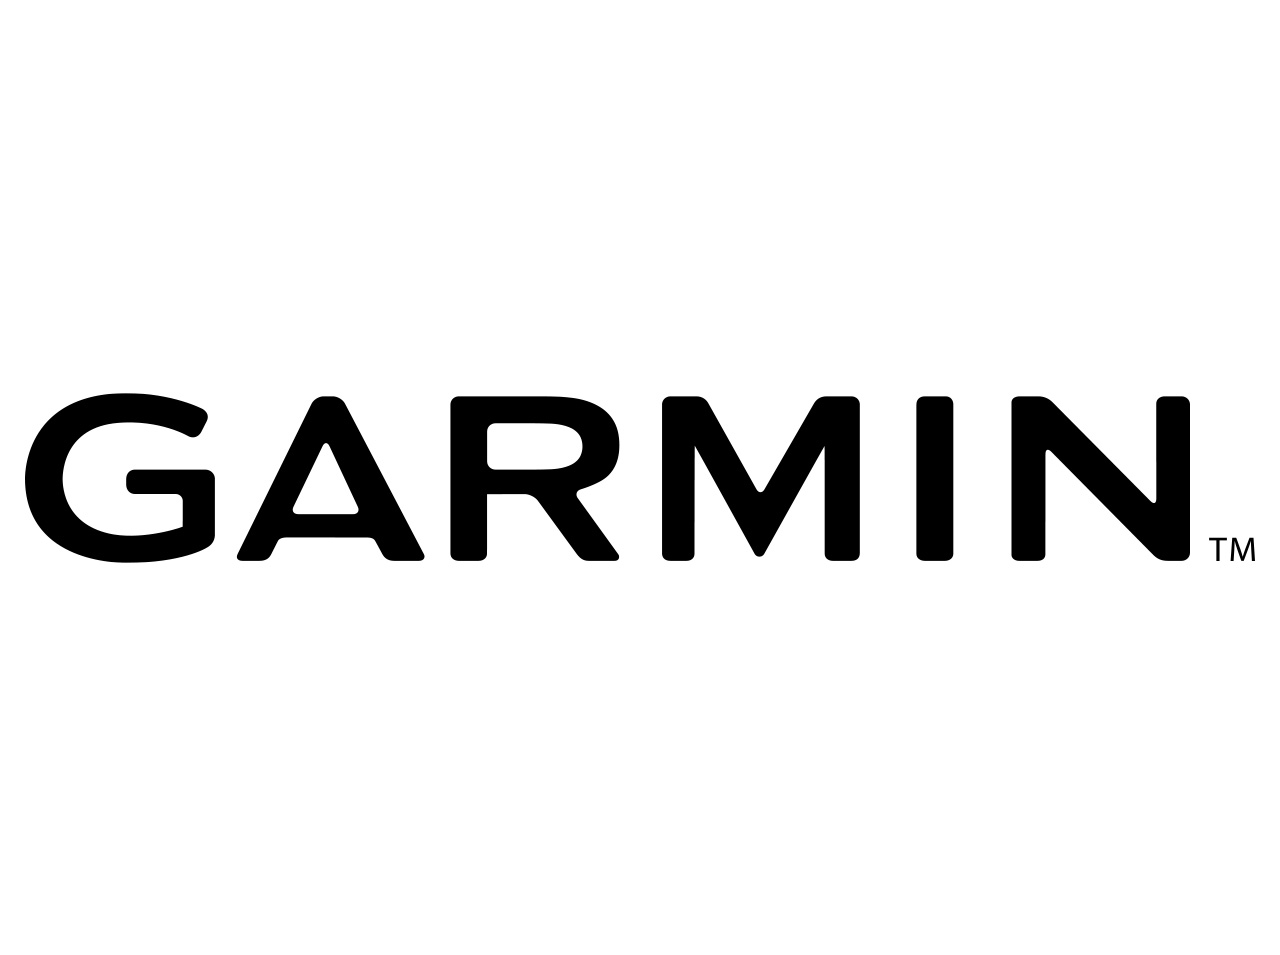 Les services de Garmin inaccessibles suite à une attaque ransomware